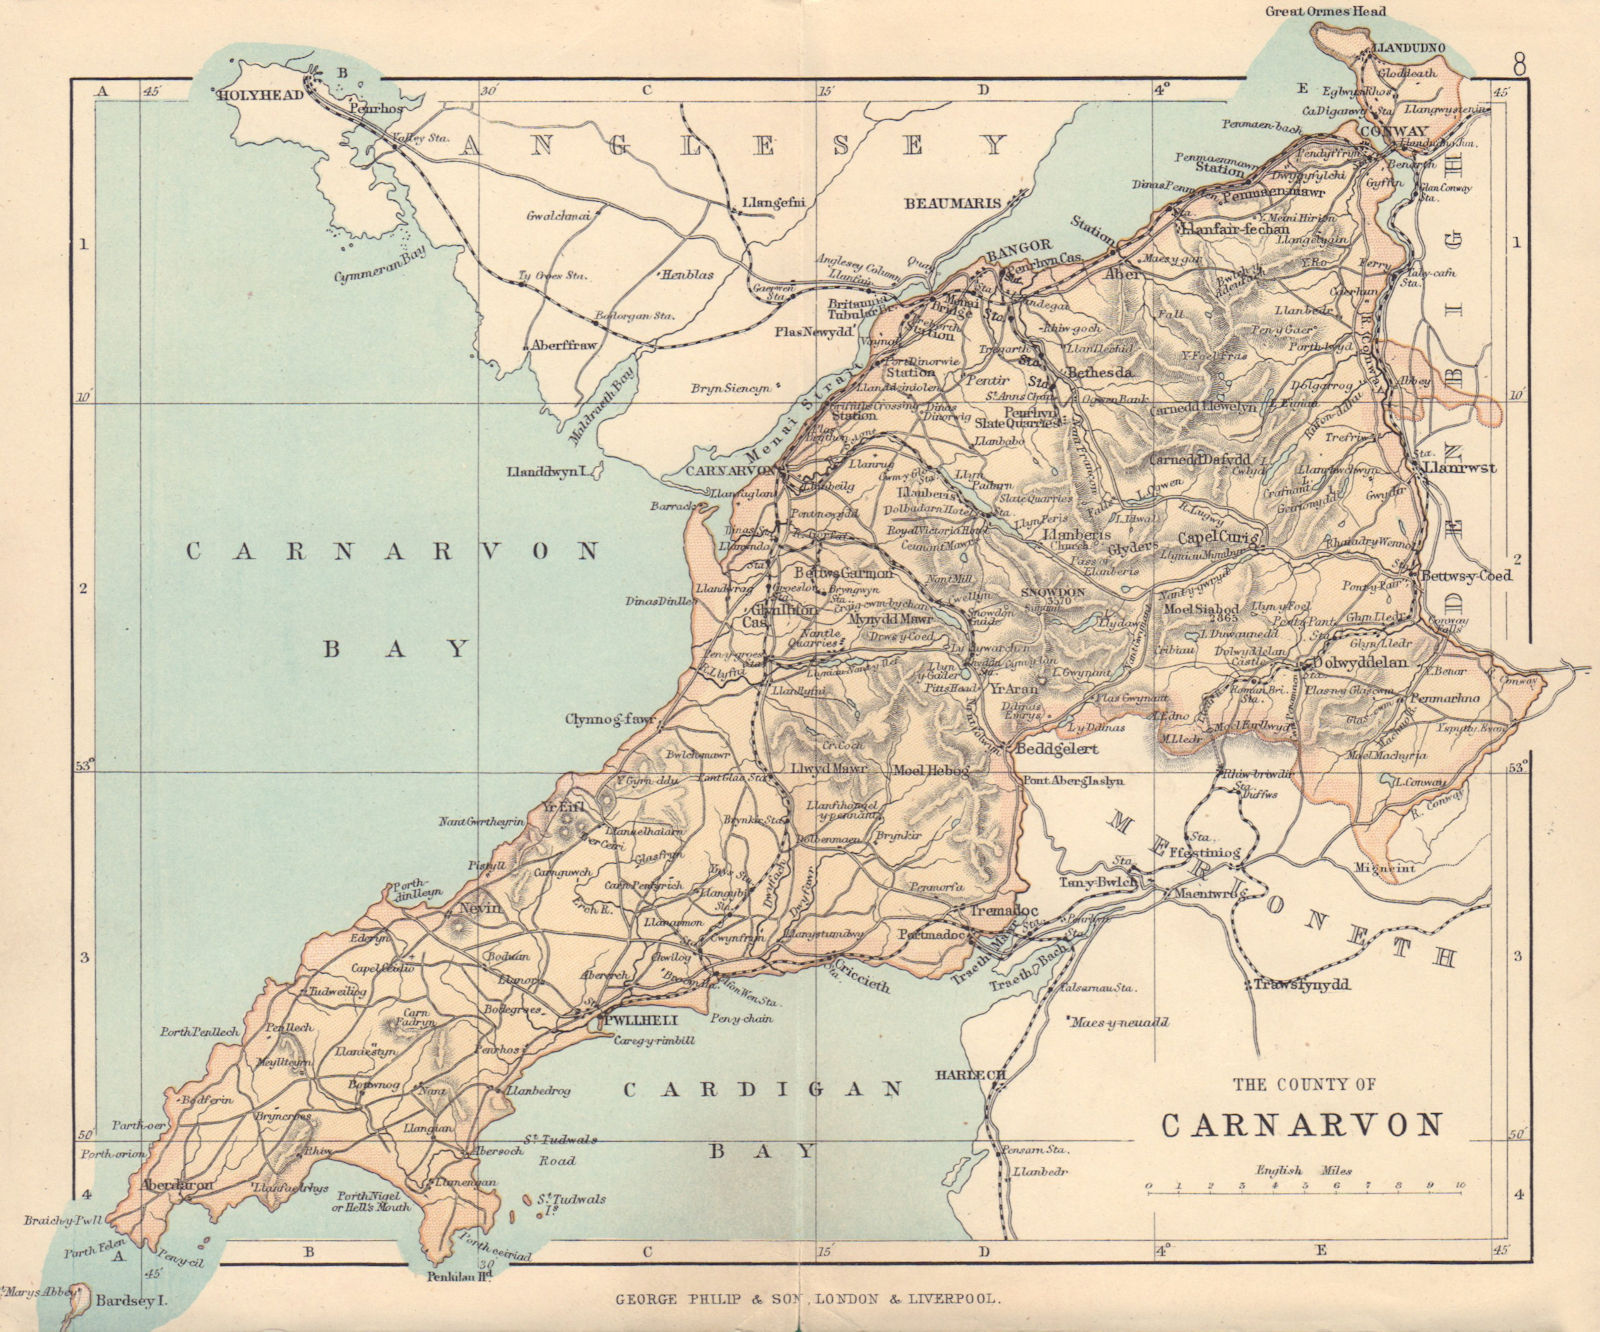 CAERNARFONSHIRE "County of Carnarvon" Bangor Conwy Wales BARTHOLOMEW 1890 map